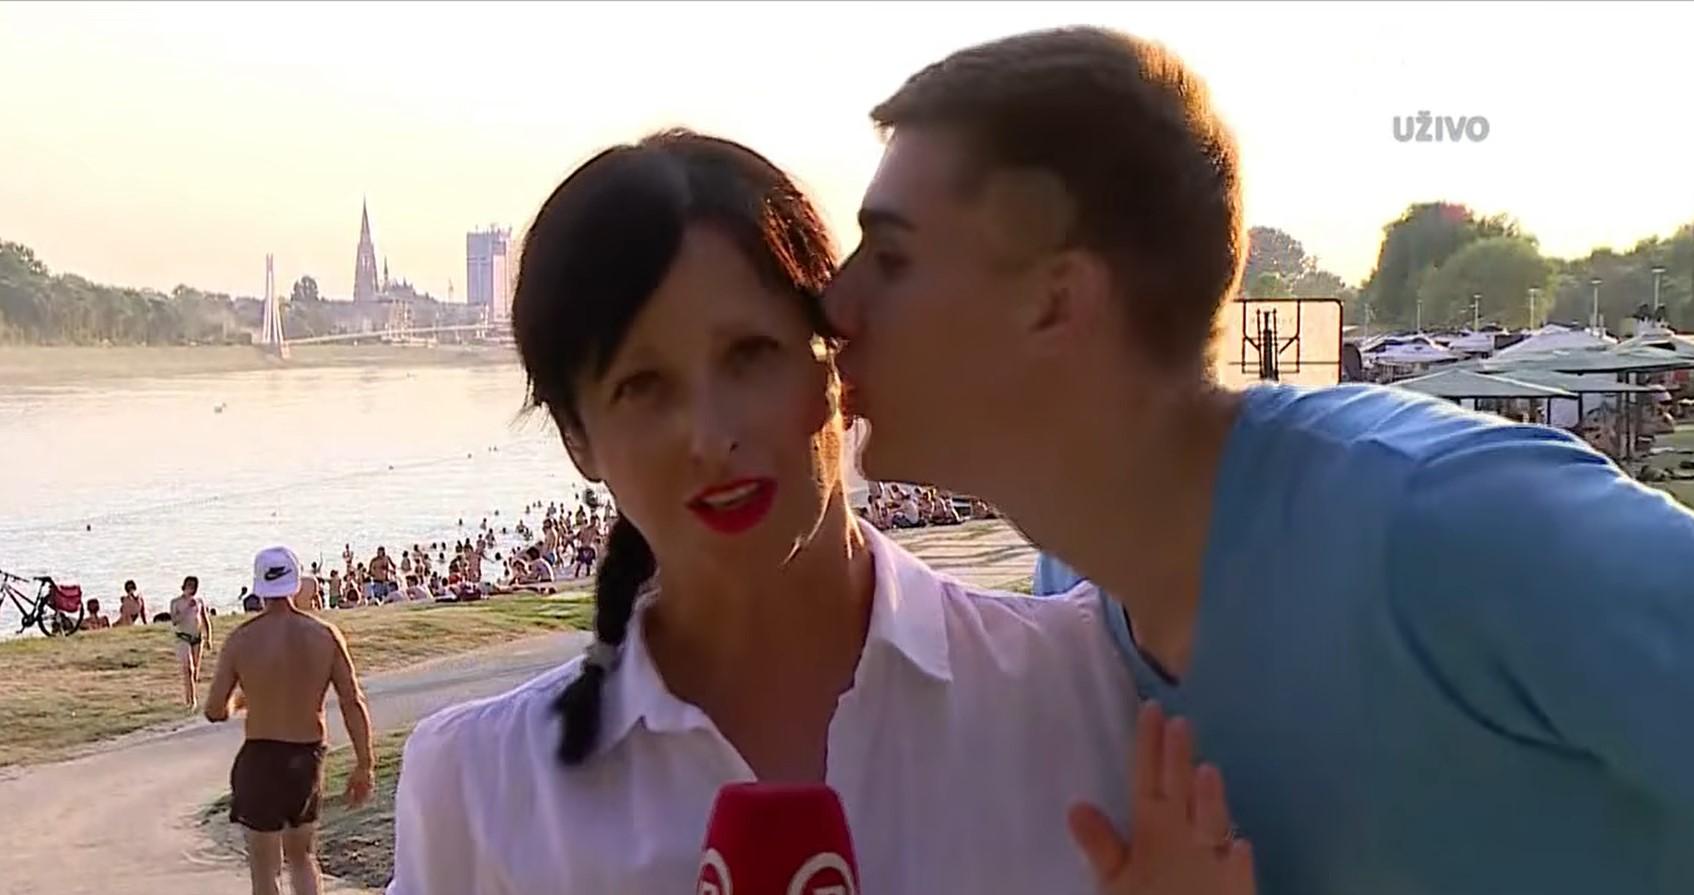 Reporterka Dnevnika Nove TV usred javljanja uživo dobila poljubac od prolaznika